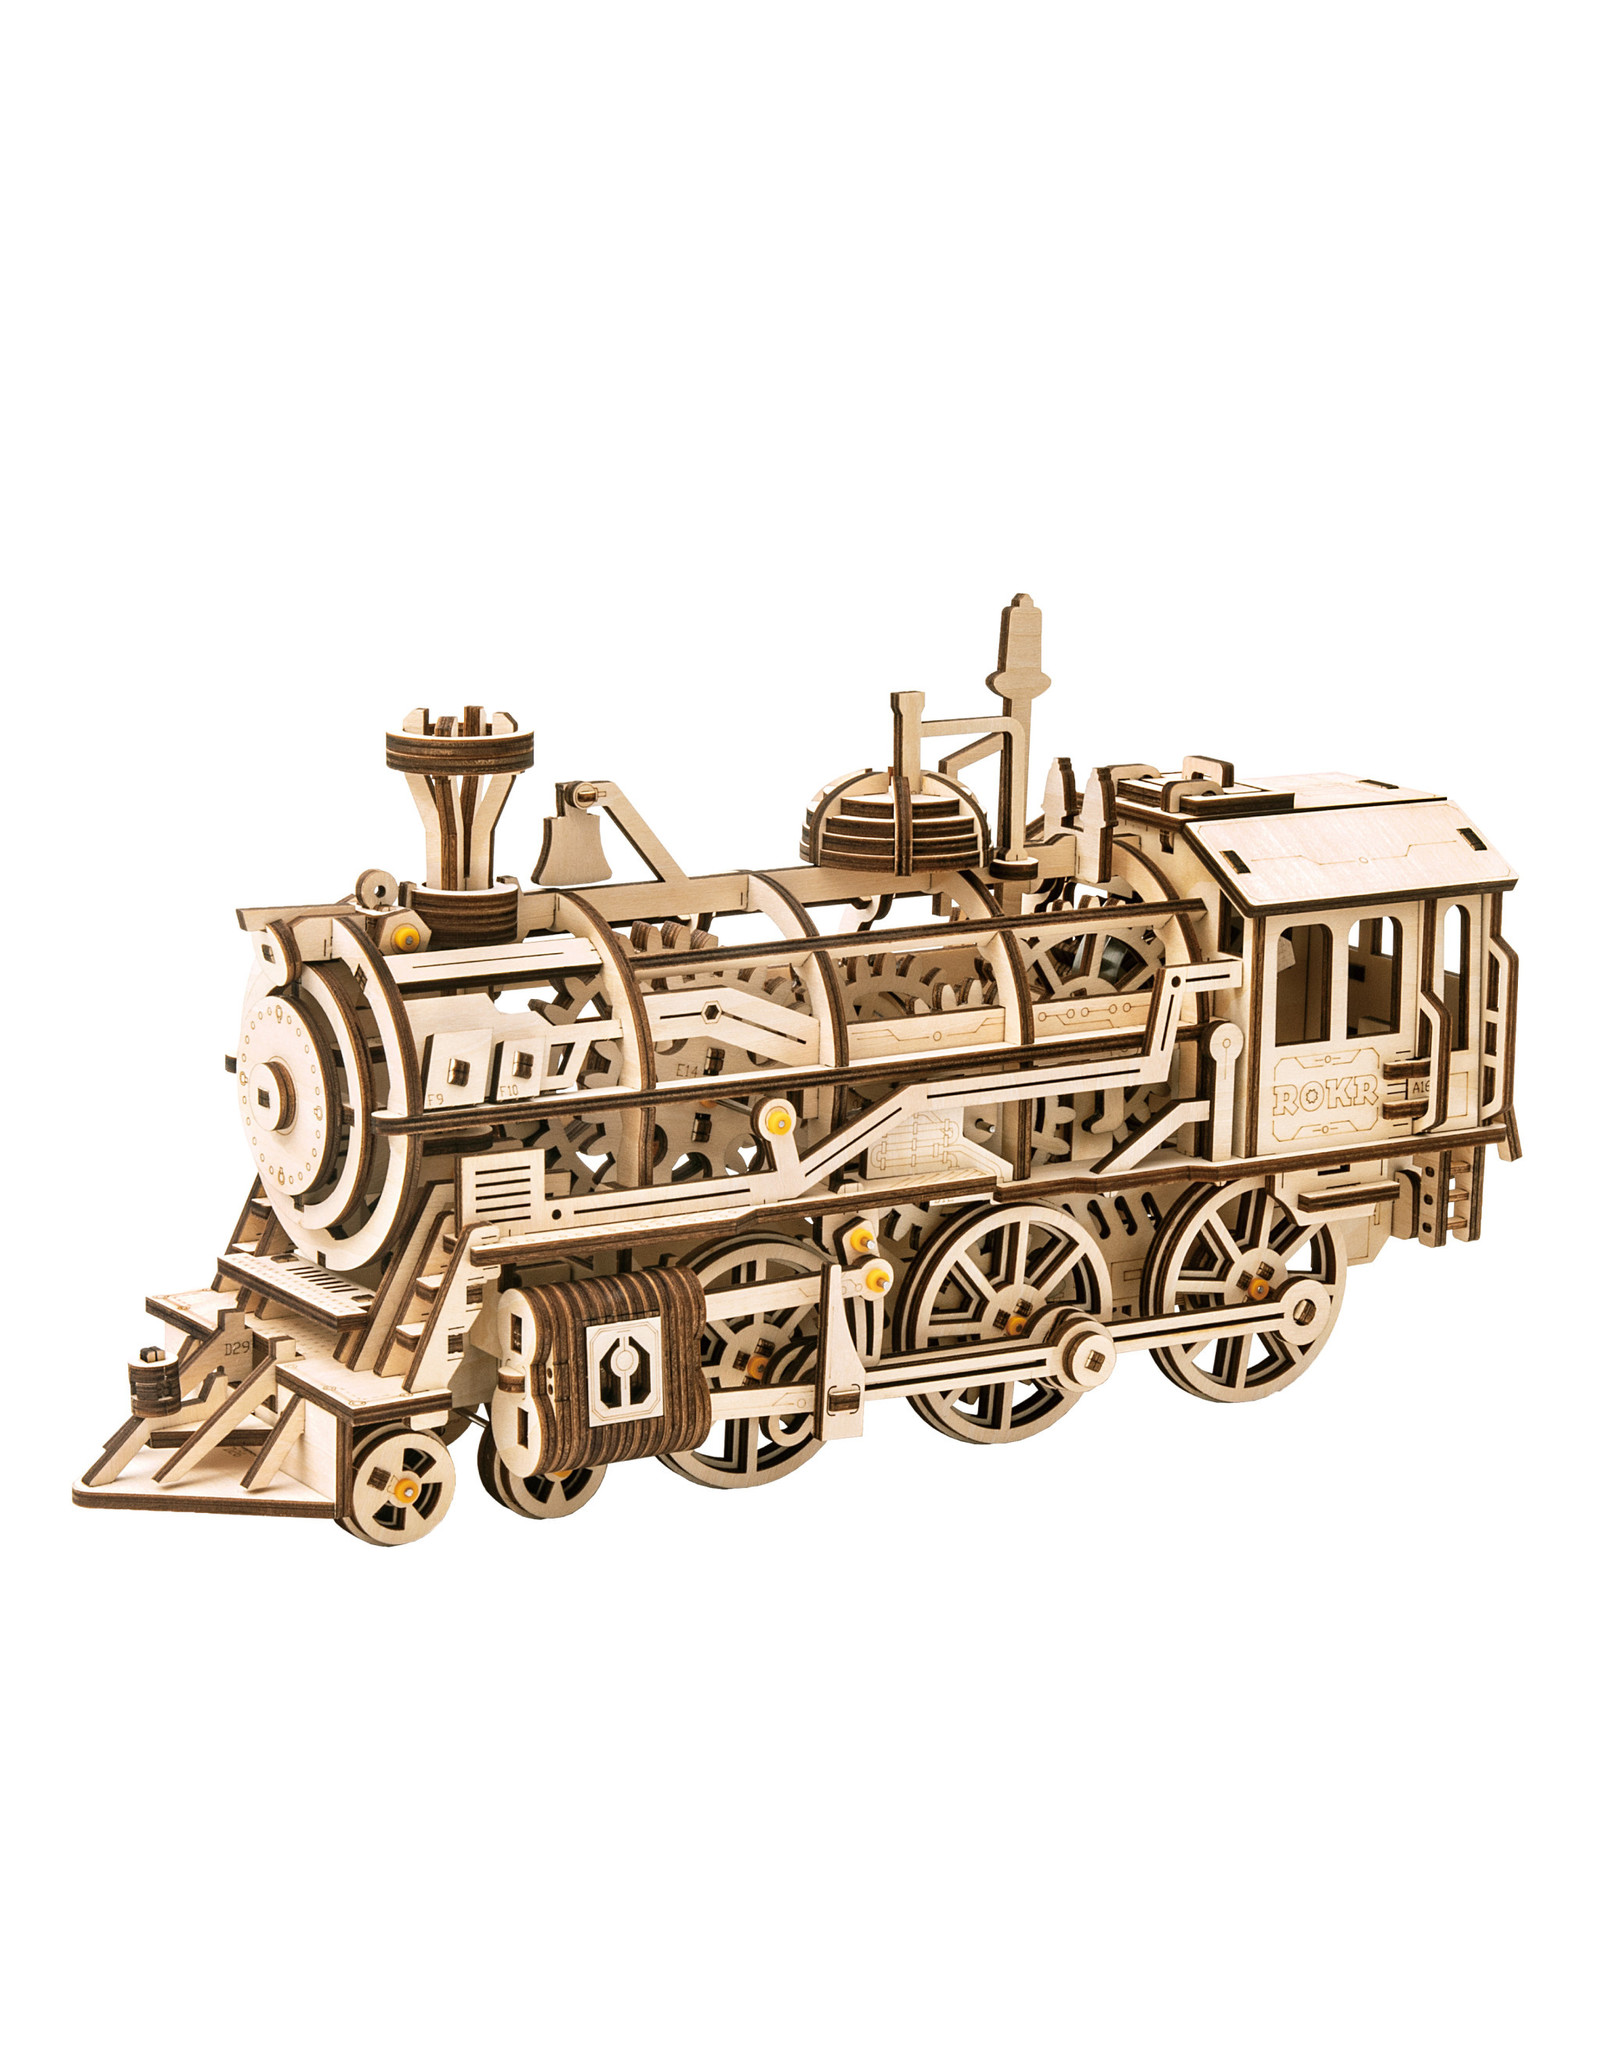 Robotime Robotime 3D Wooden Puzzle Locomotive Mechanical Gears